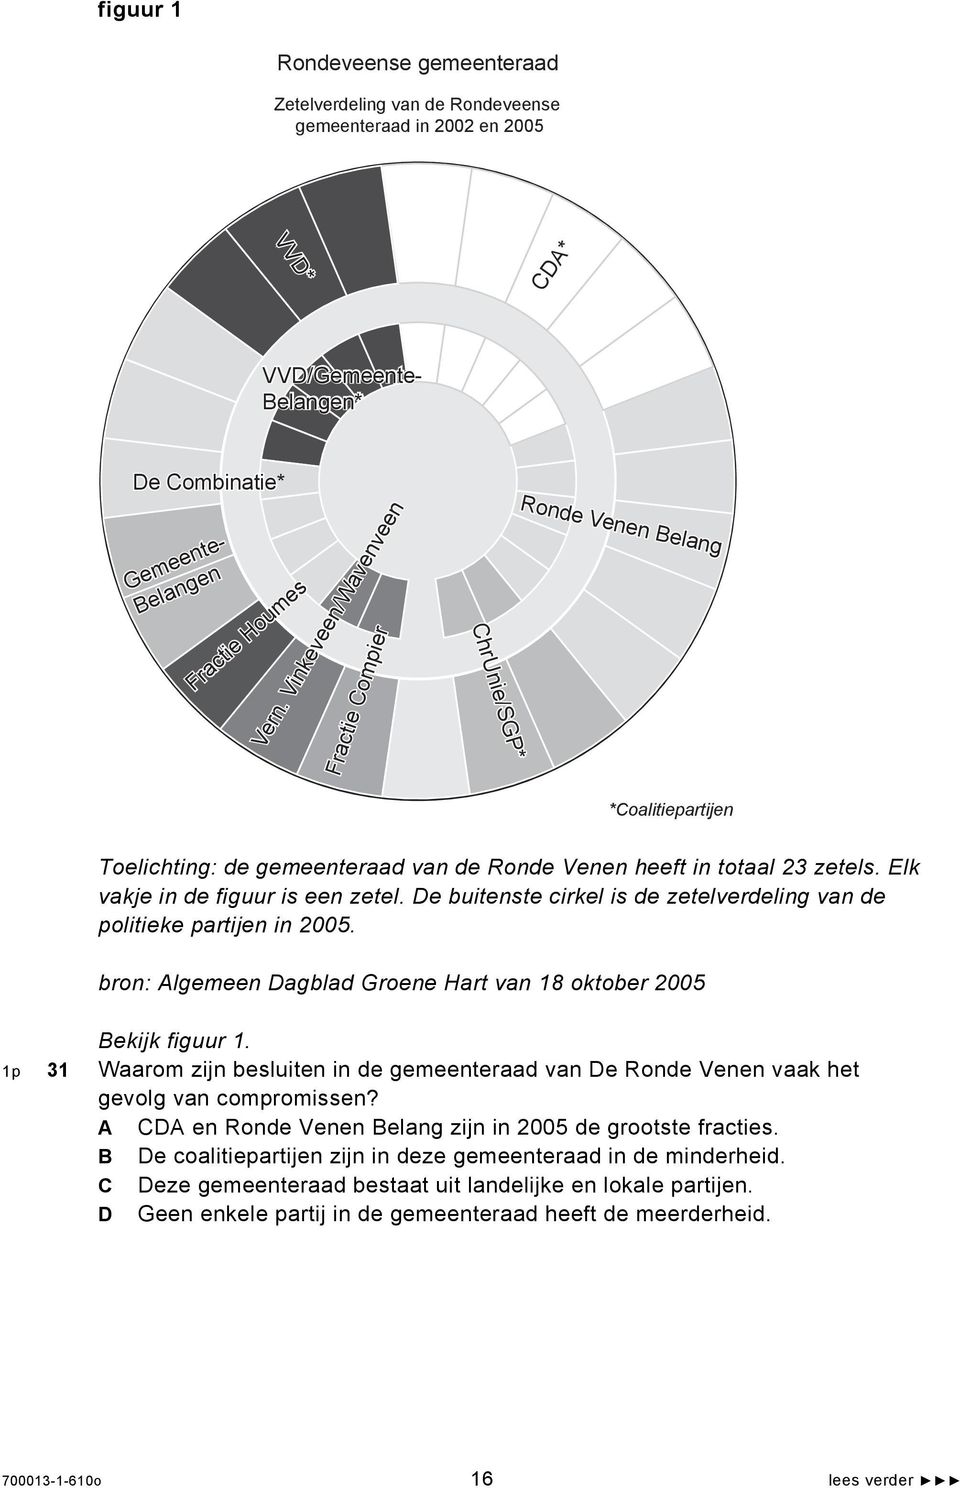 Elk vakje in de figuur is een zetel. De buitenste cirkel is de zetelverdeling van de politieke partijen in 2005. bron: Algemeen Dagblad Groene Hart van 18 oktober 2005 Bekijk figuur 1.